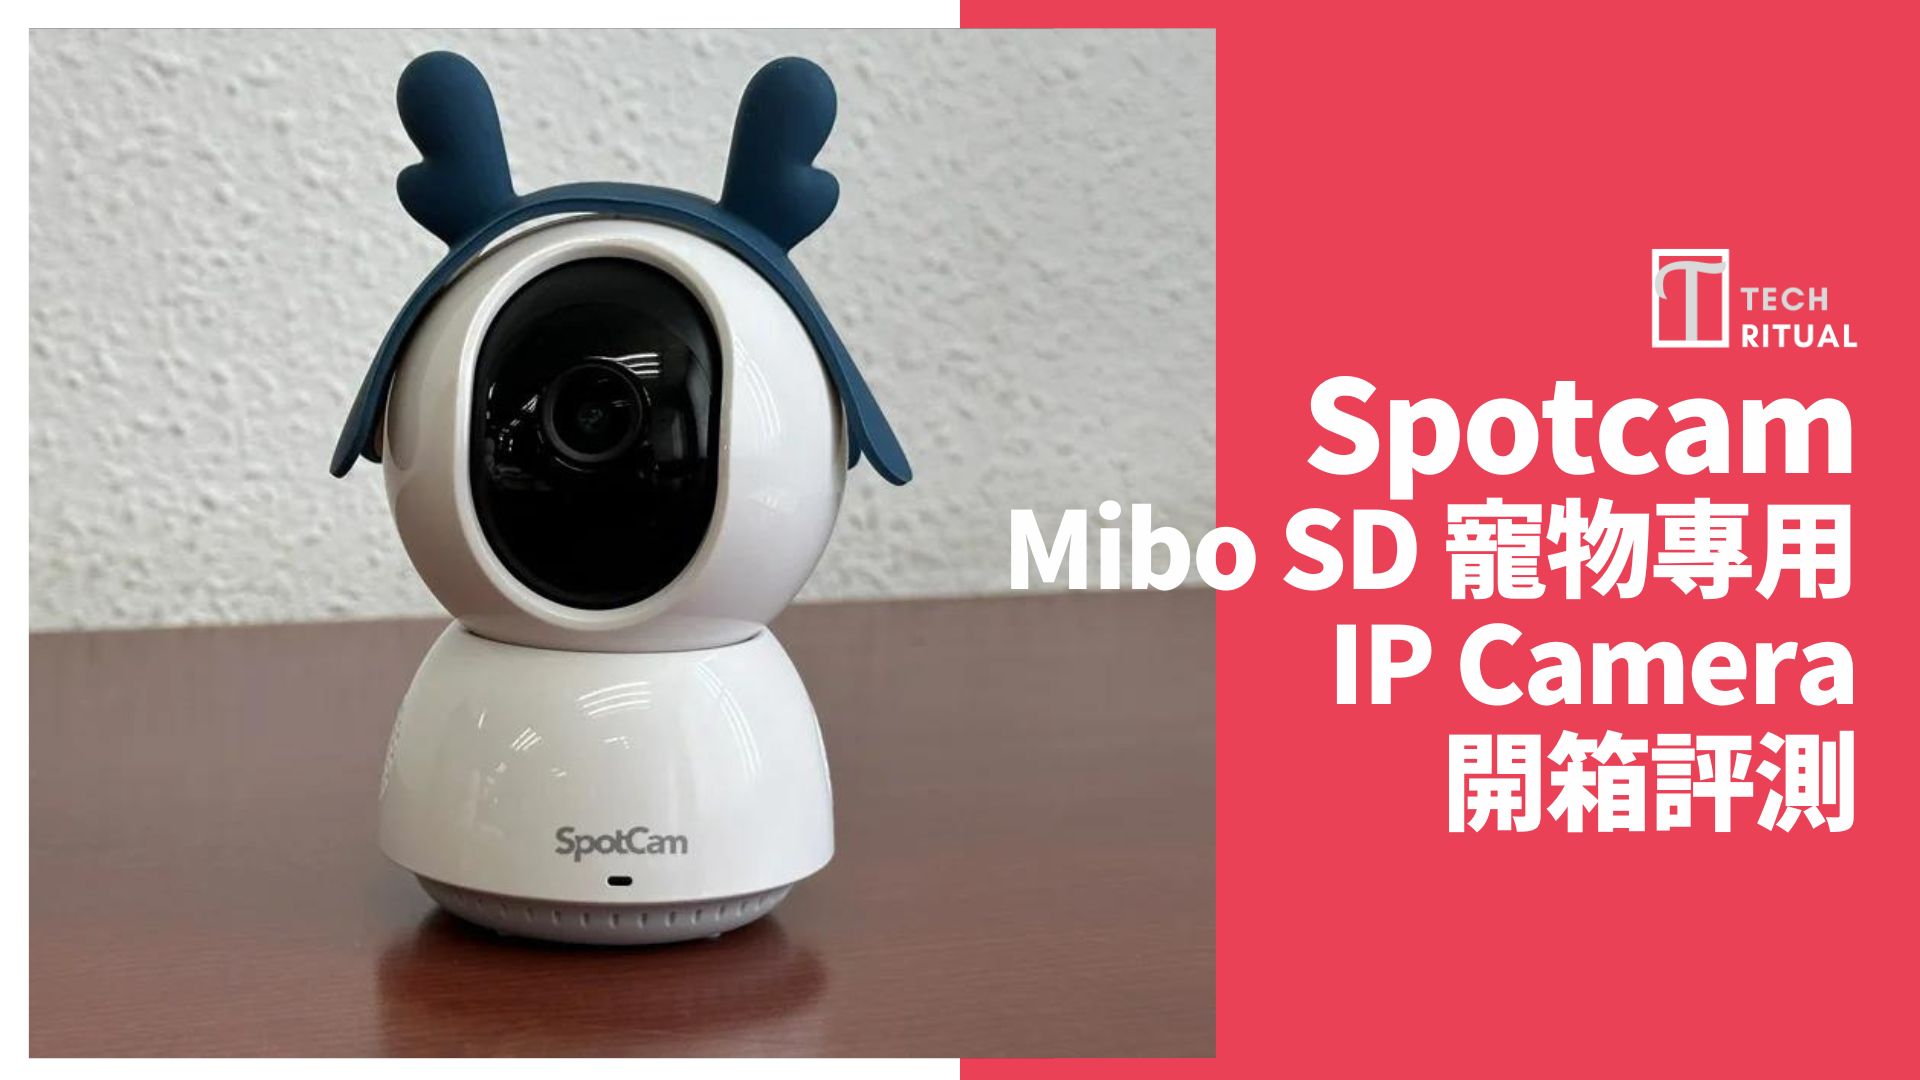 【開箱評測】SpotCam Mibo SD 寵物專用 IP Camera：2K 解像度清晰、自動追蹤貓狗動向